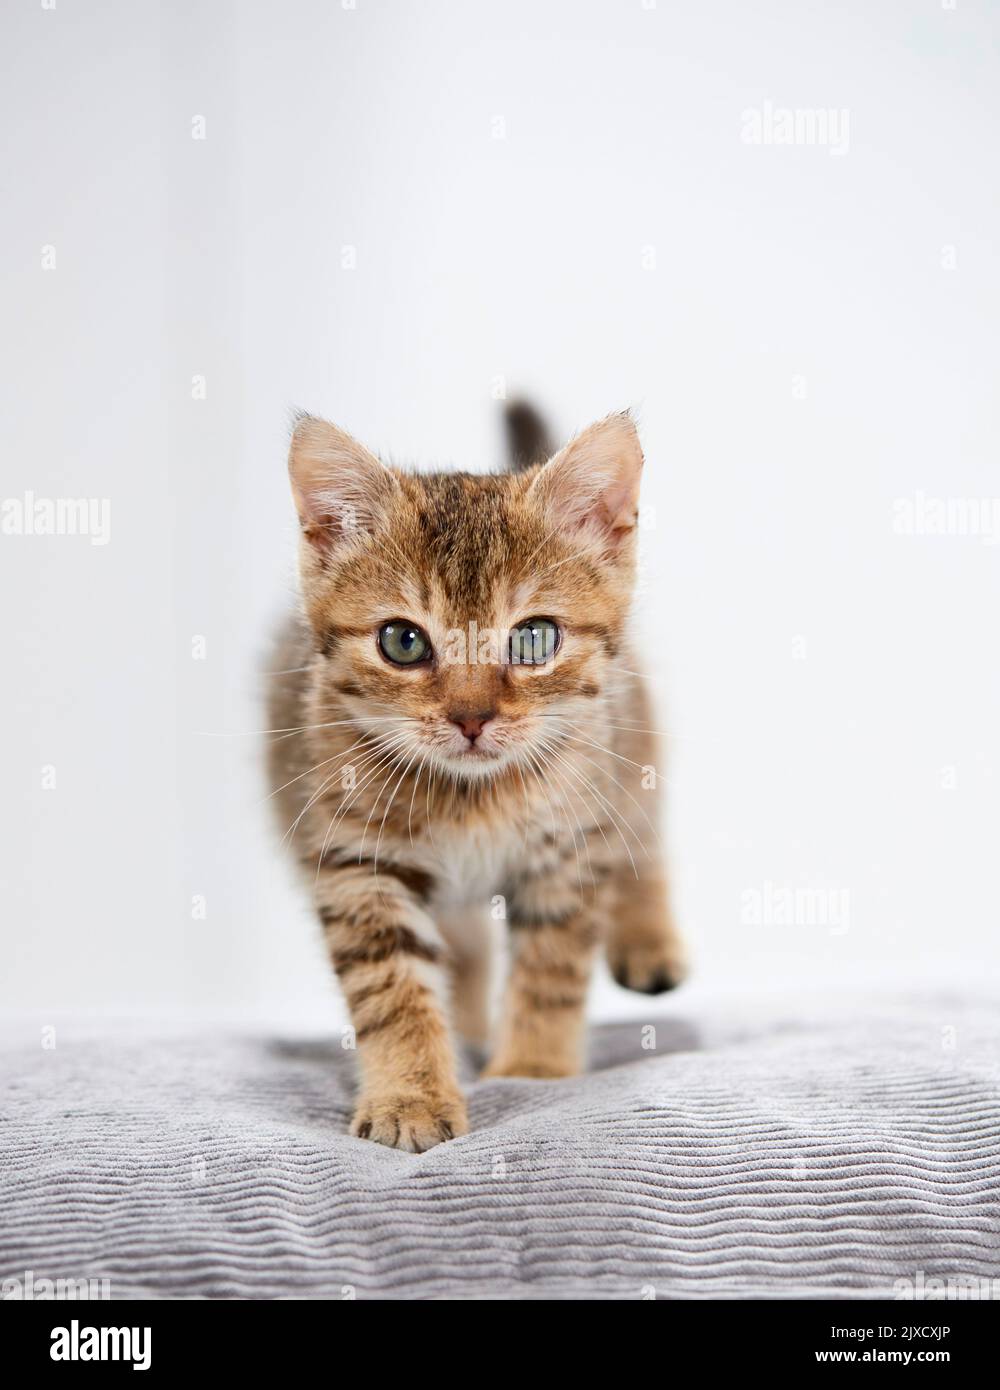 Gato doméstico. Un gatito tabby camina sobre un cojín. Alemania Foto de stock